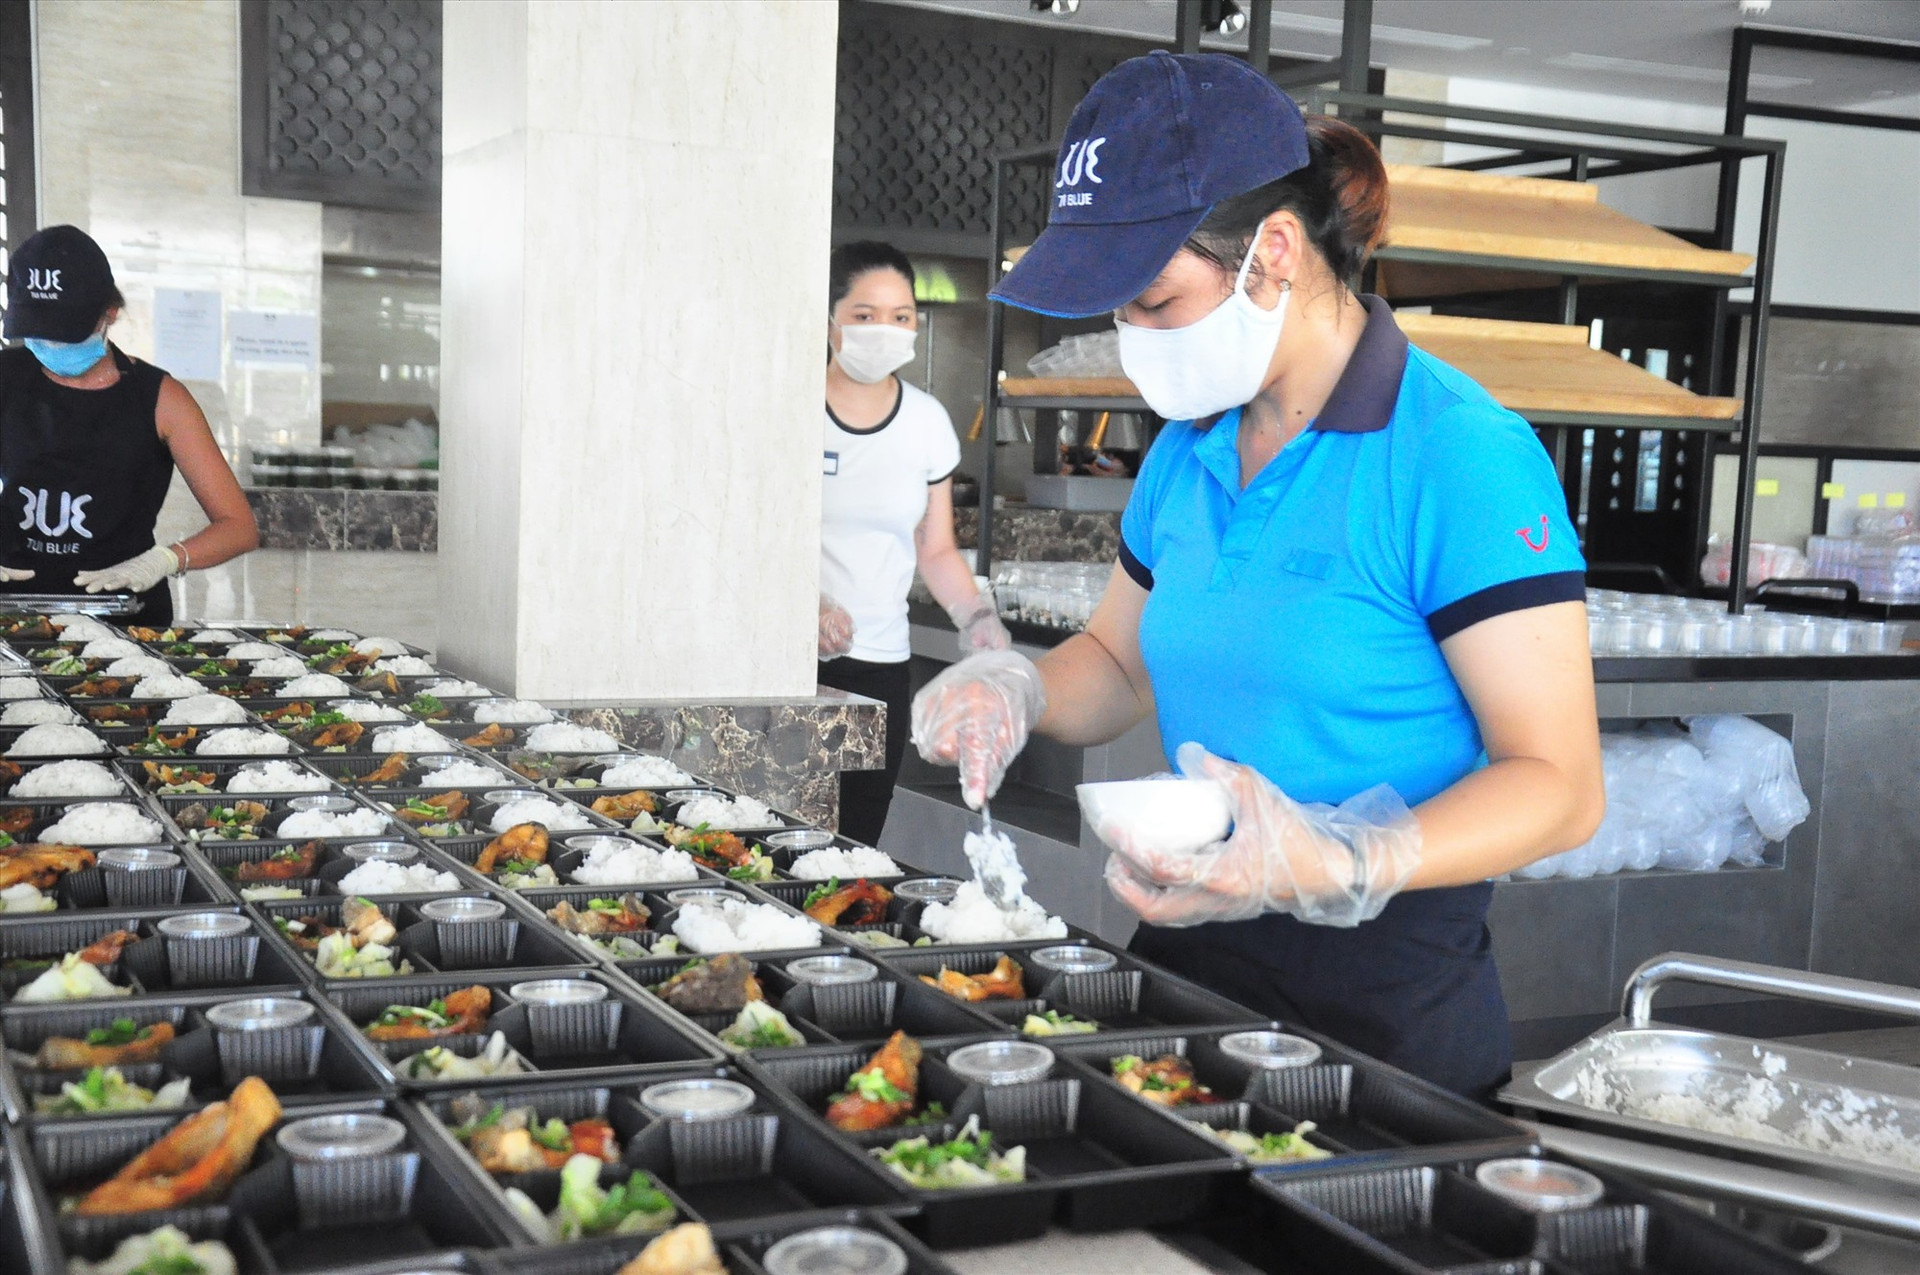 Ngày 18.8, 370 suất ăn đầu tiên sẽ đến với đội ngũ cán bộ, nhân viên y tế 3 đơn vị: Bệnh viện Đa khoa Trung ương Quảng Nam, Trung tâm Kiểm soát bệnh tật Quảng Nam và Trung tâm 115 Quảng Nam.